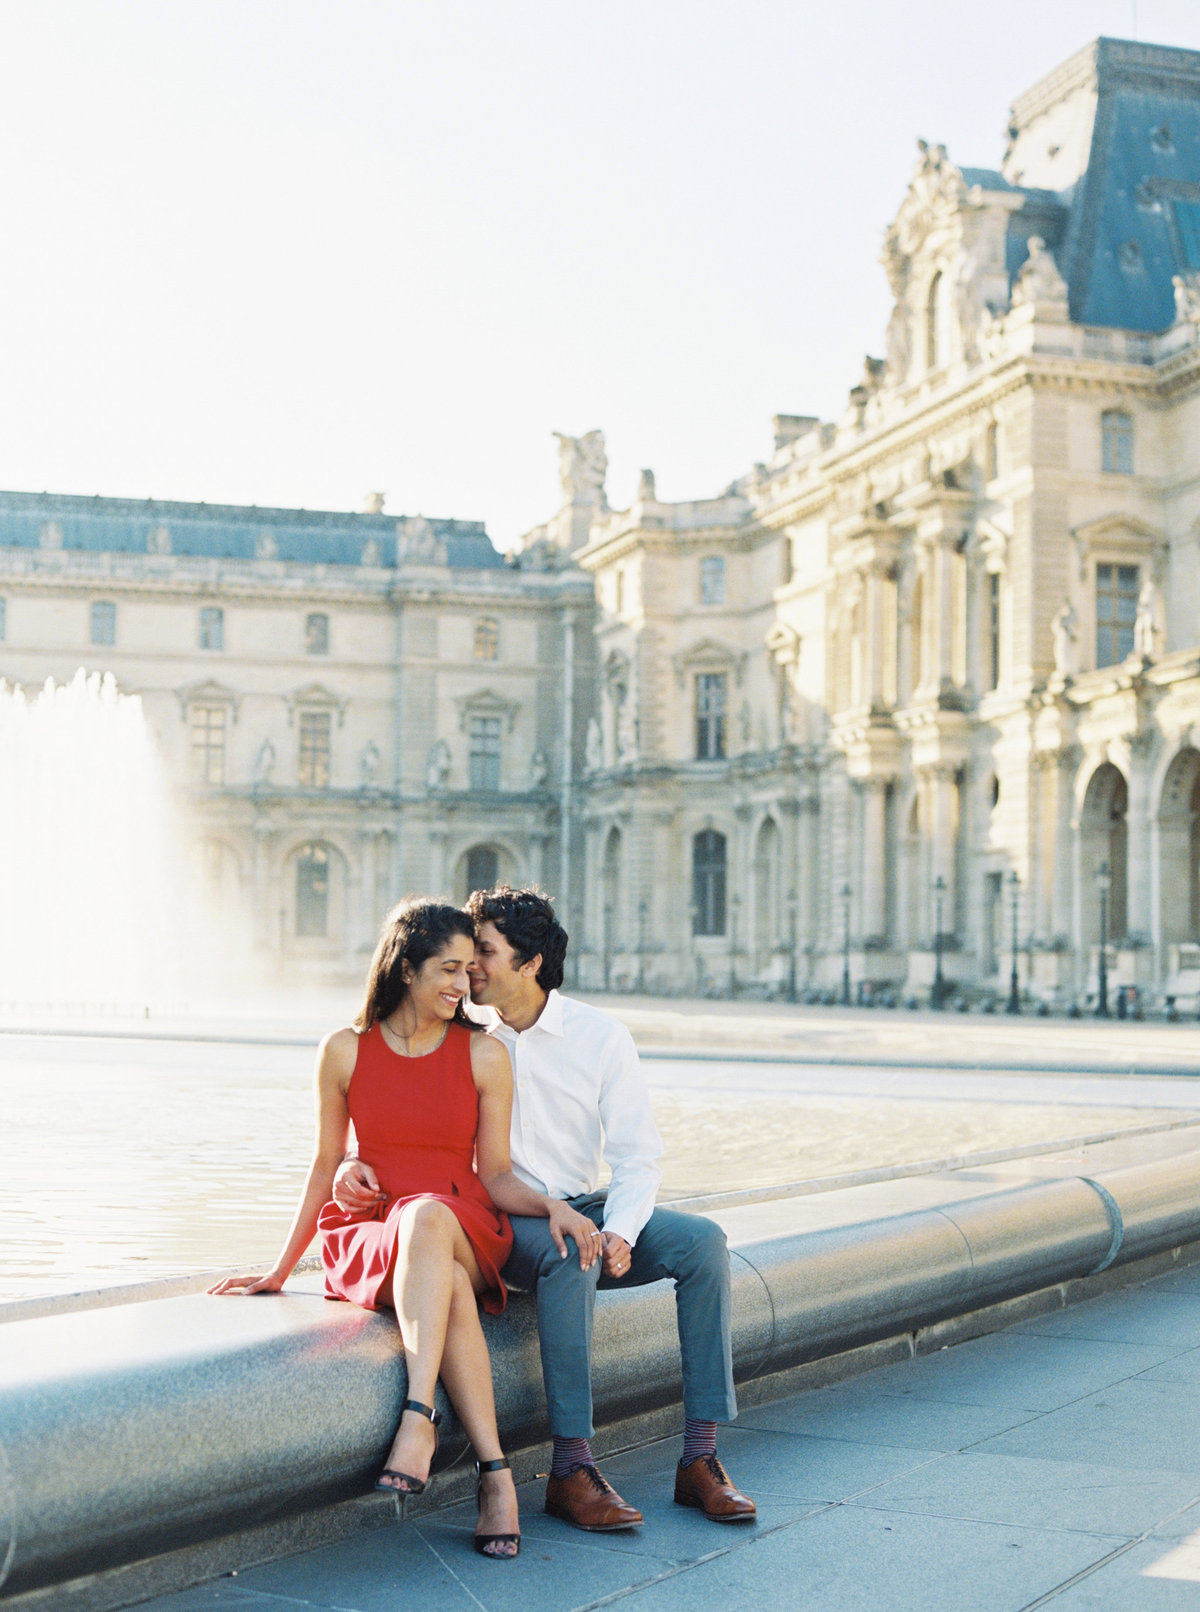 Saumya + Ashish Paris Tuileries Garden Louvre Couples Session - Cassie Valente Photography 0025